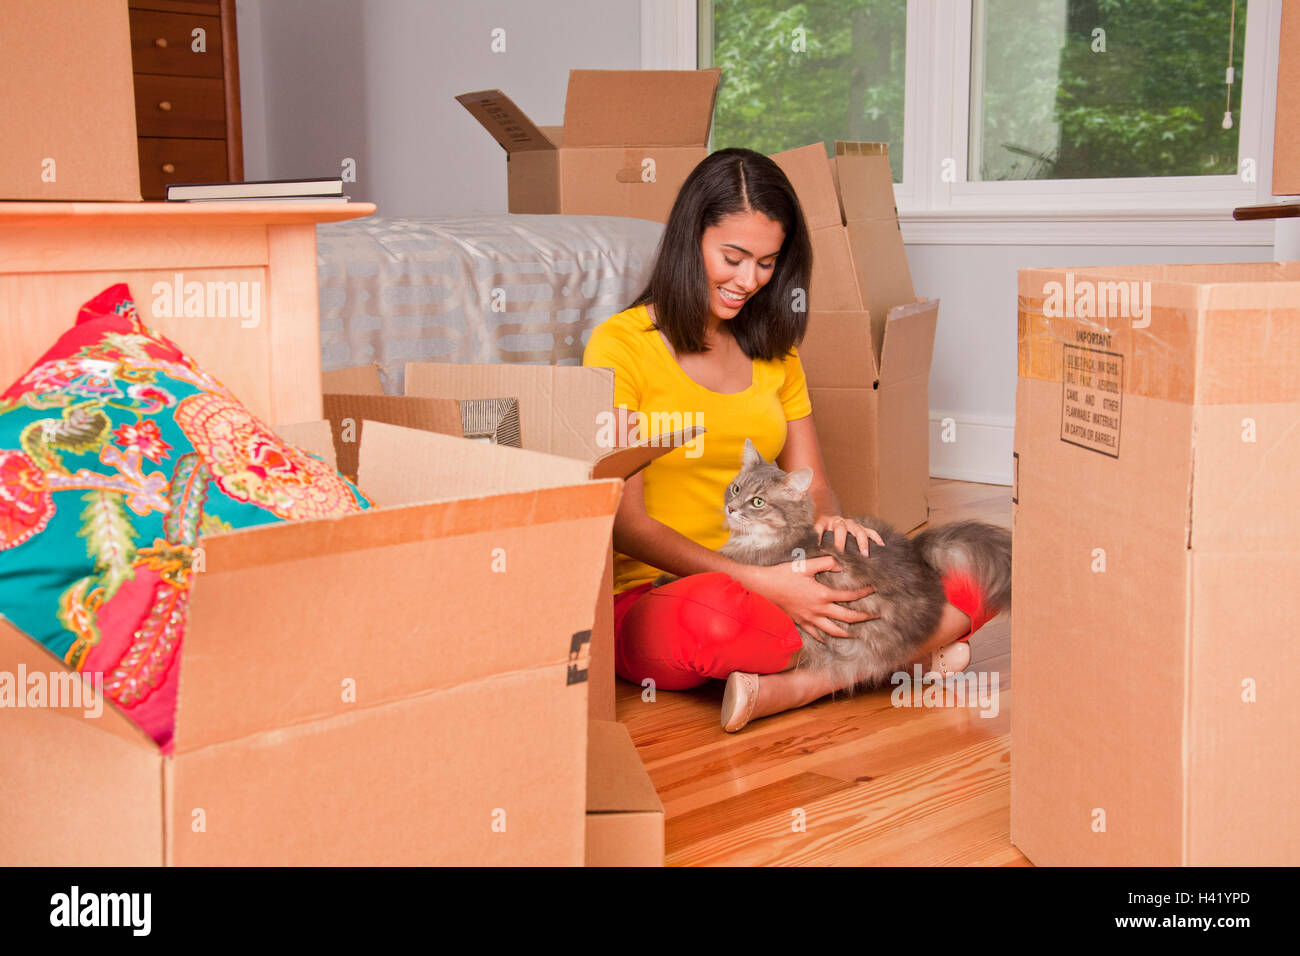 Ispanico donna seduta sul pavimento petting cat vicino a contenitori per il trasloco Foto Stock